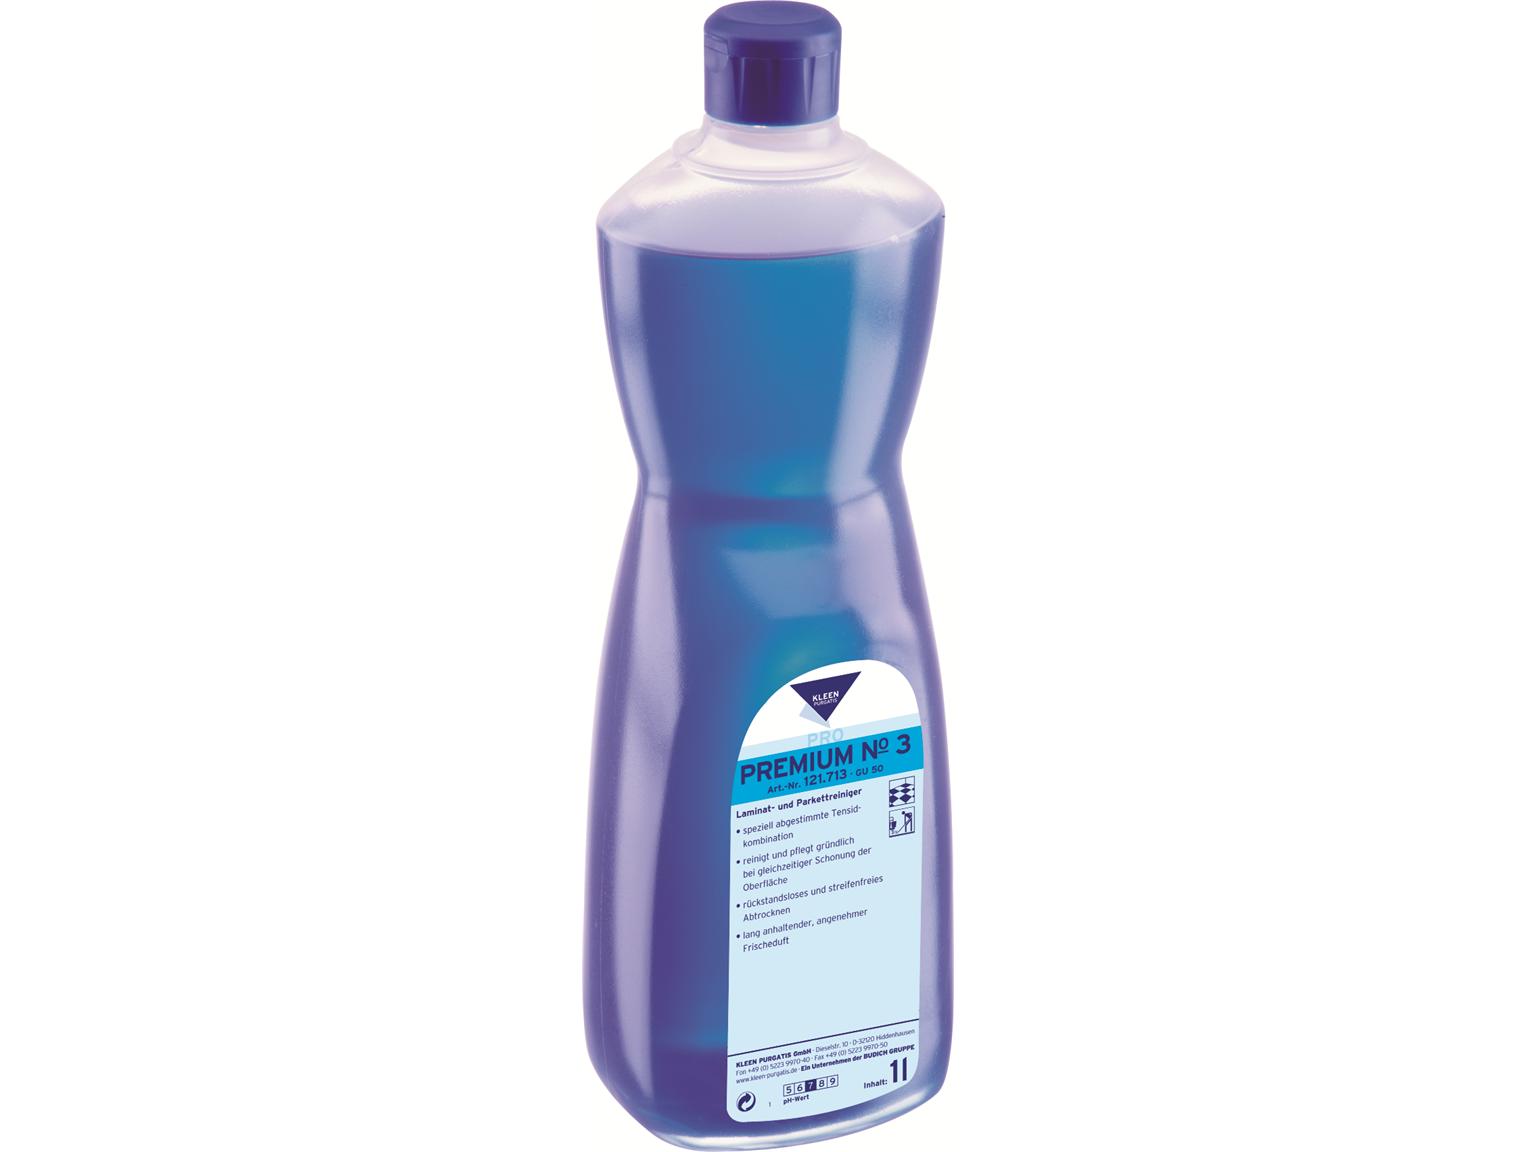 REINIGUNGSMITTEL KLEEN PURGATIS  Premium No. 3, 1 Liter Flasche